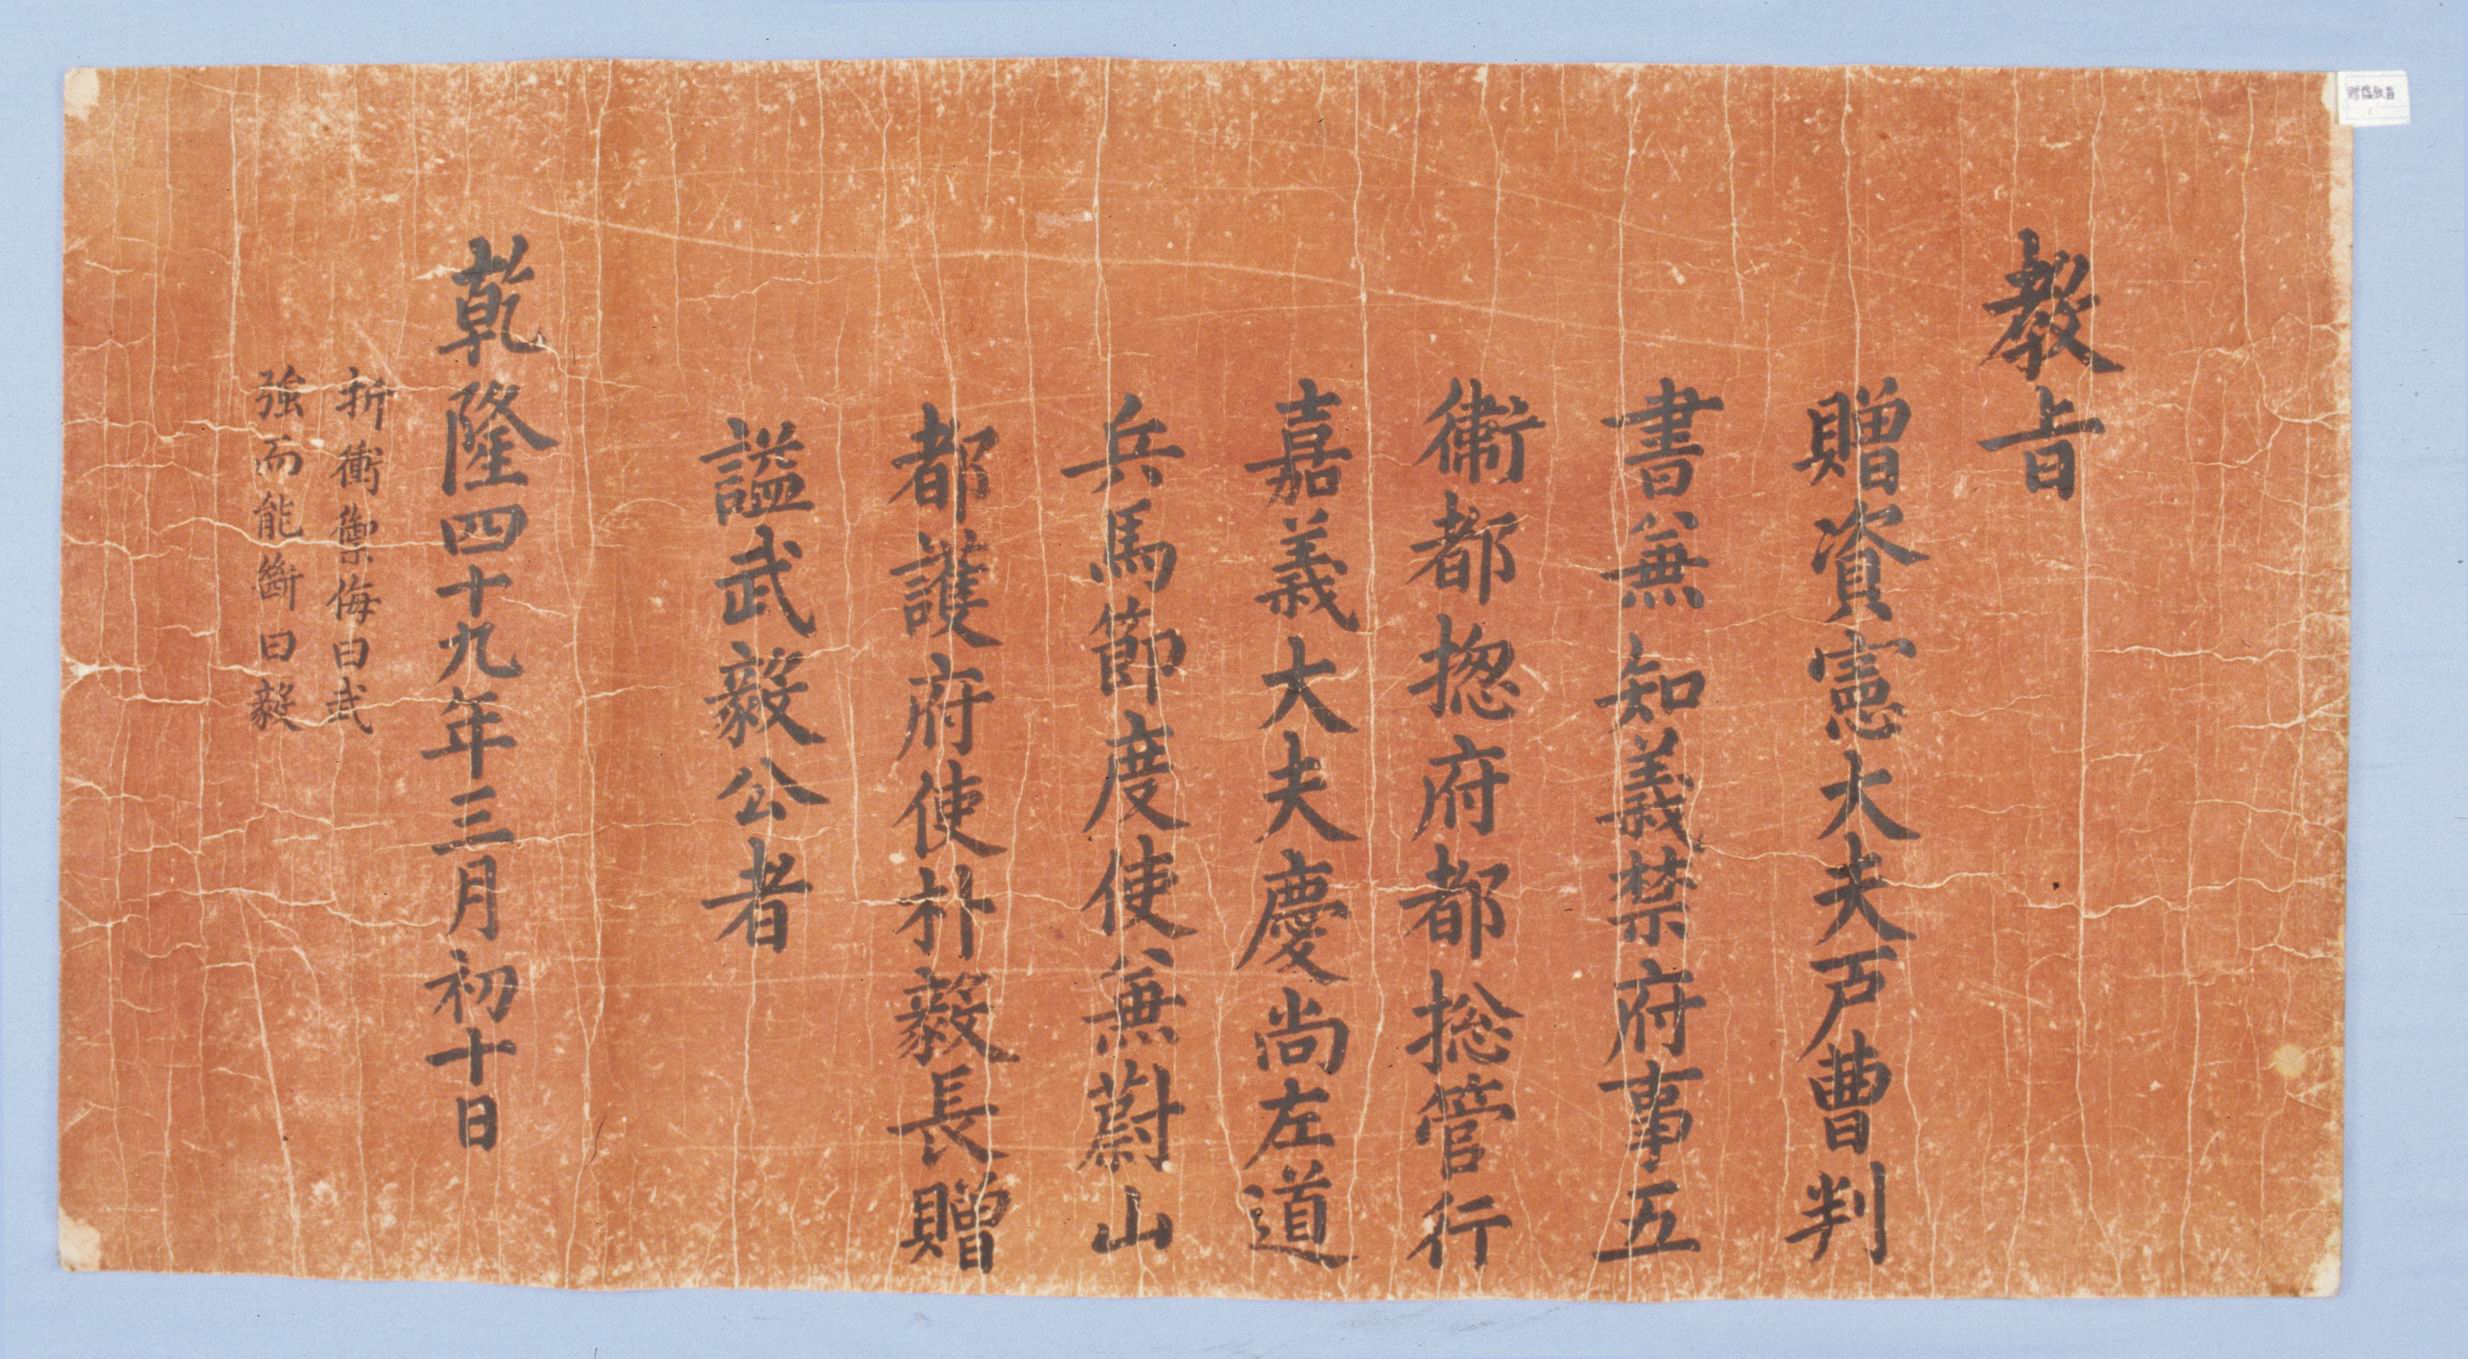 1784년에 국왕이 박의장에게 시호를 내려준 증시 교지